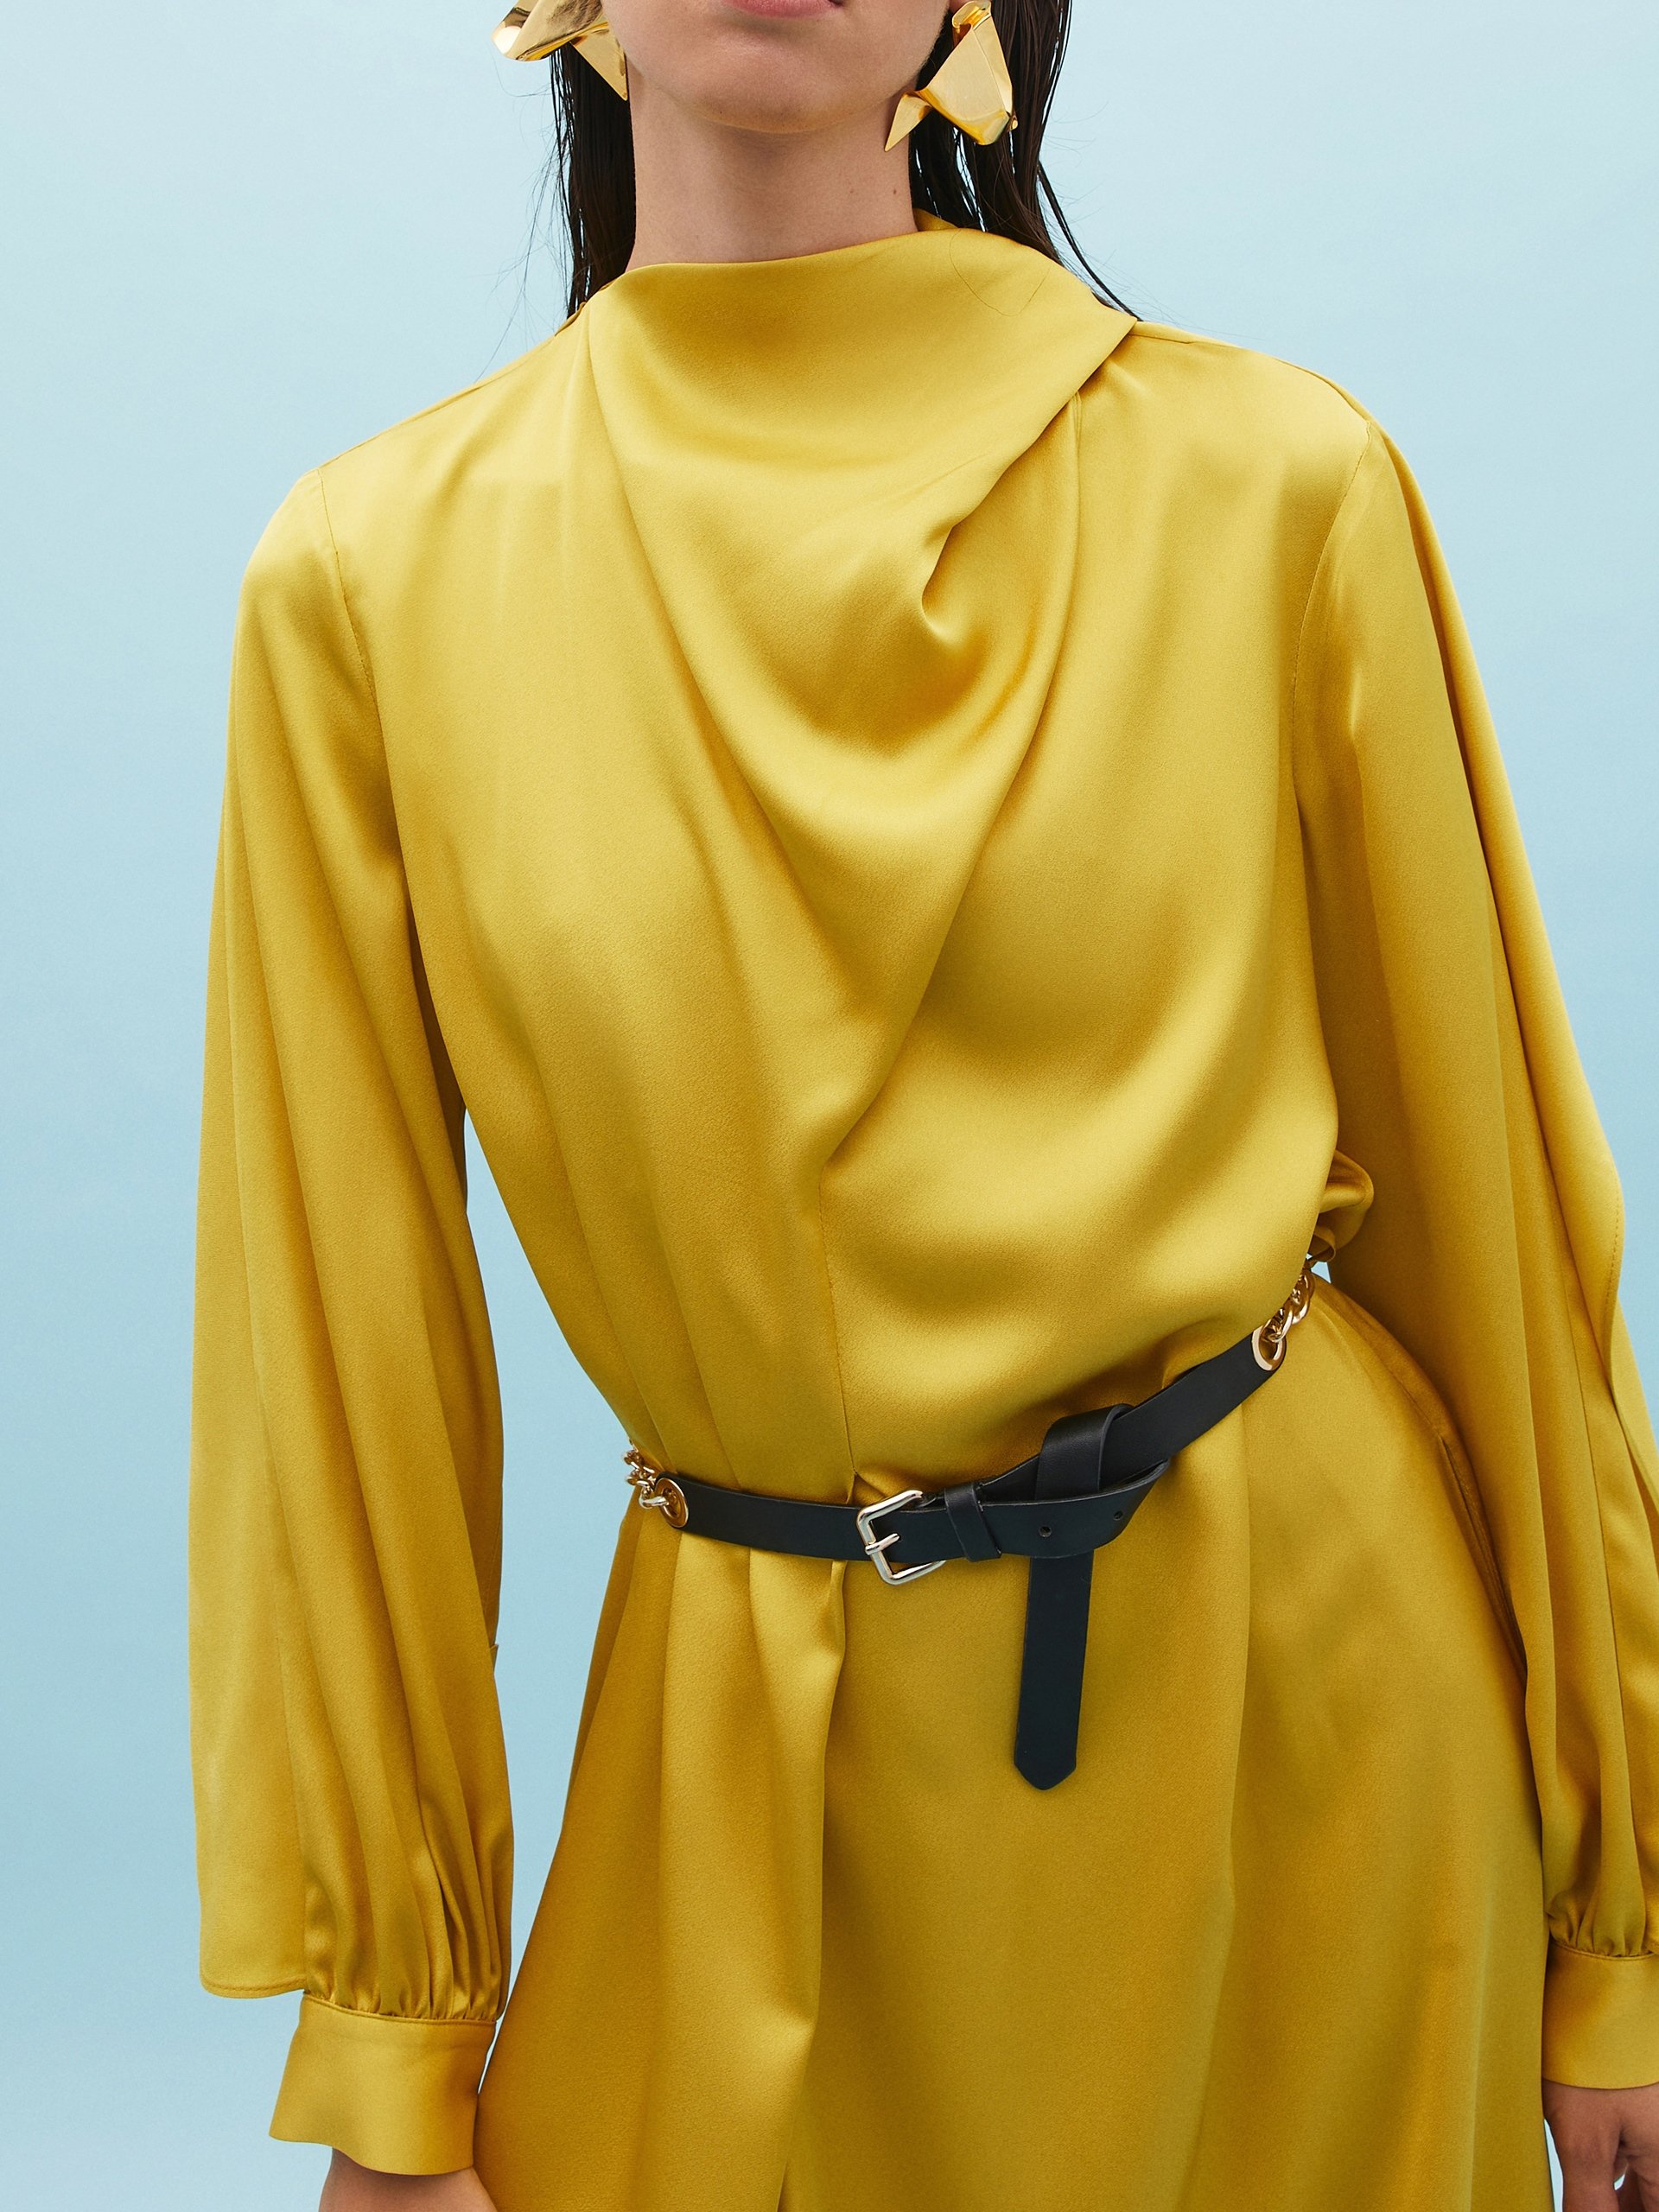 فستان لون خردلي مع حزام وياقة متدلية